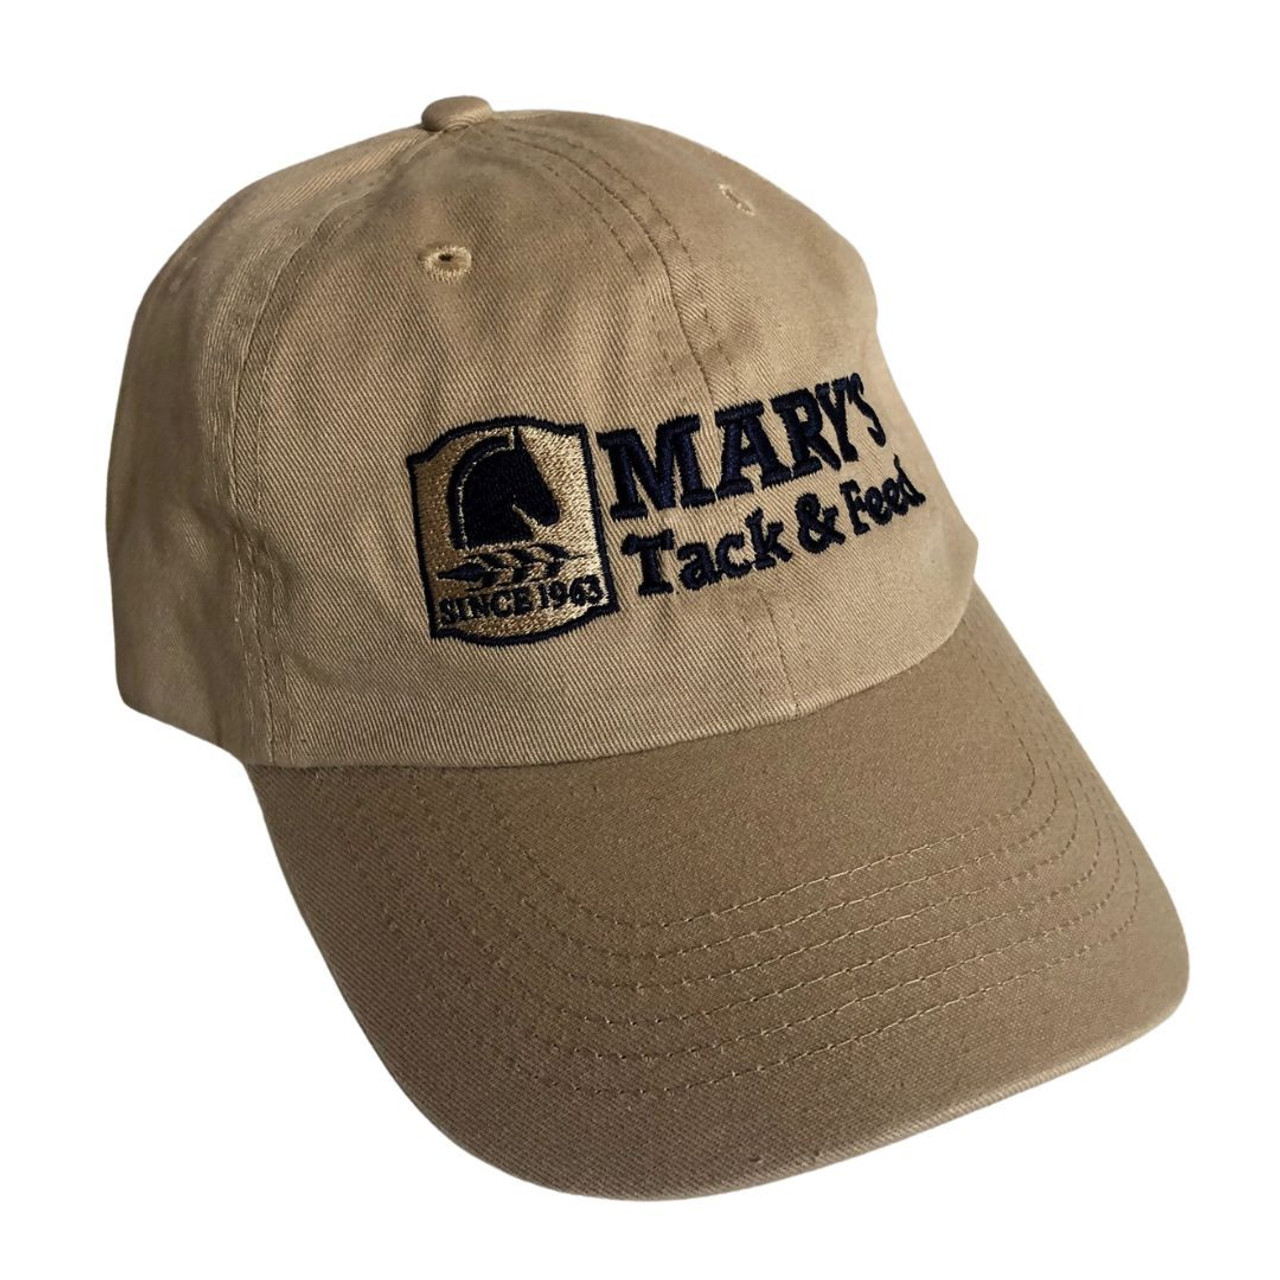 Mary's Tack & Feed Ball Cap- Baseball Hats